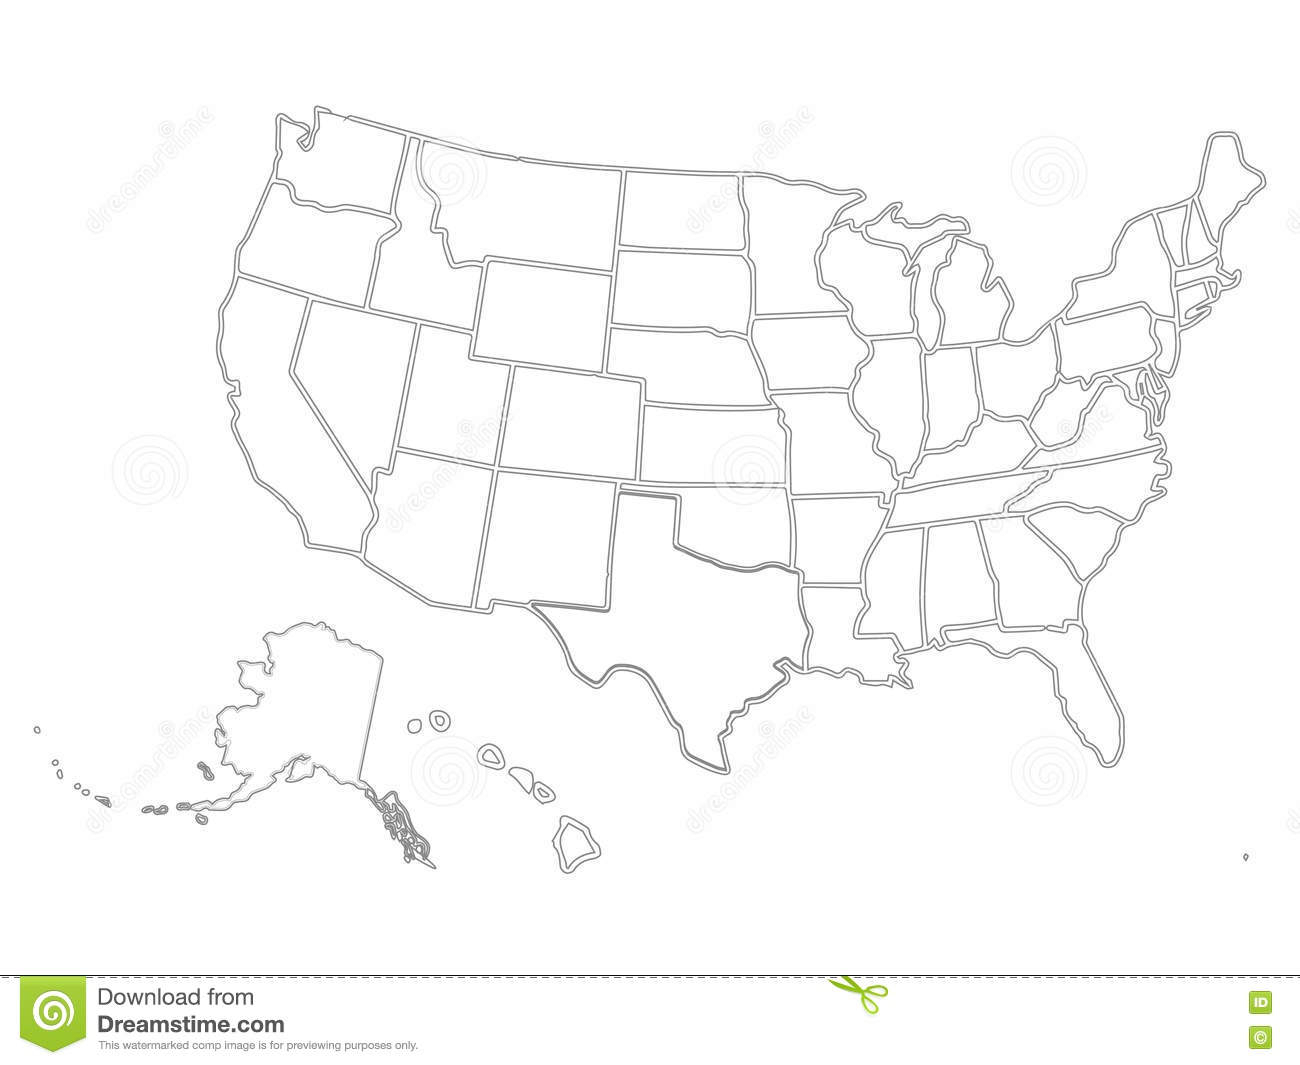 Blank Similar USA Map on White Background